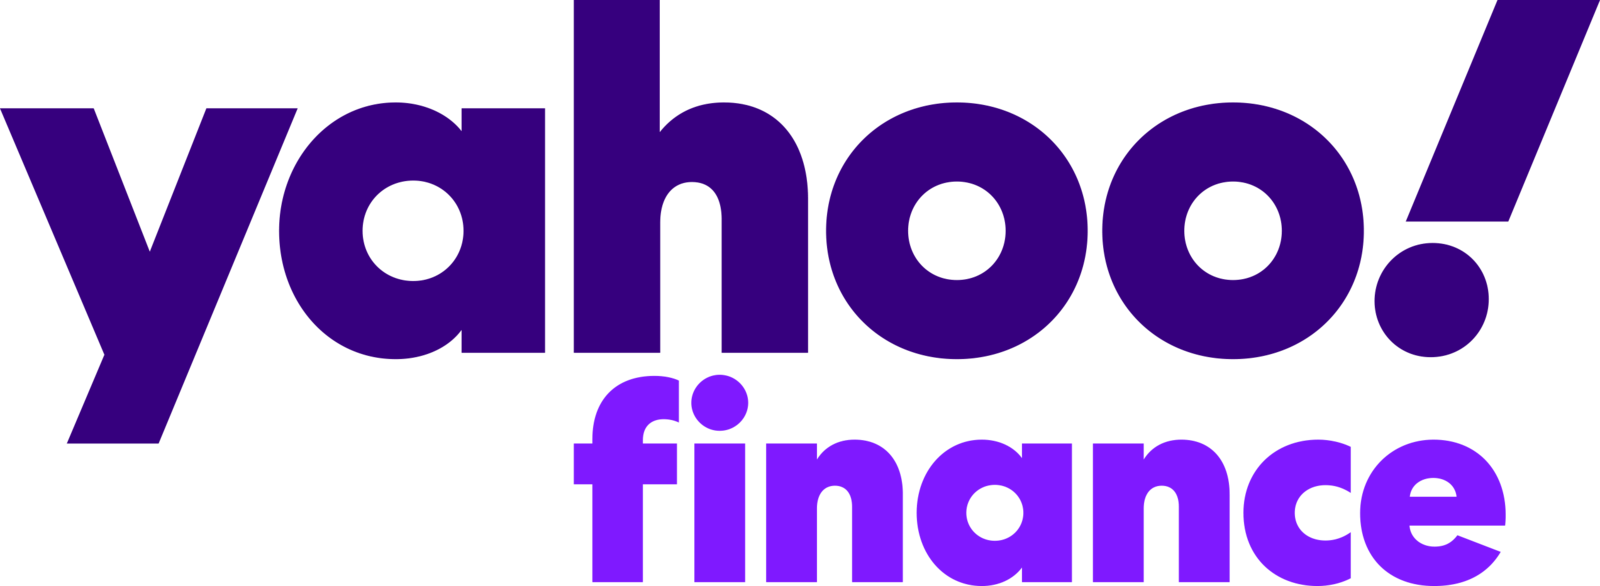 Yahoo!_Finance_logo_2021-min